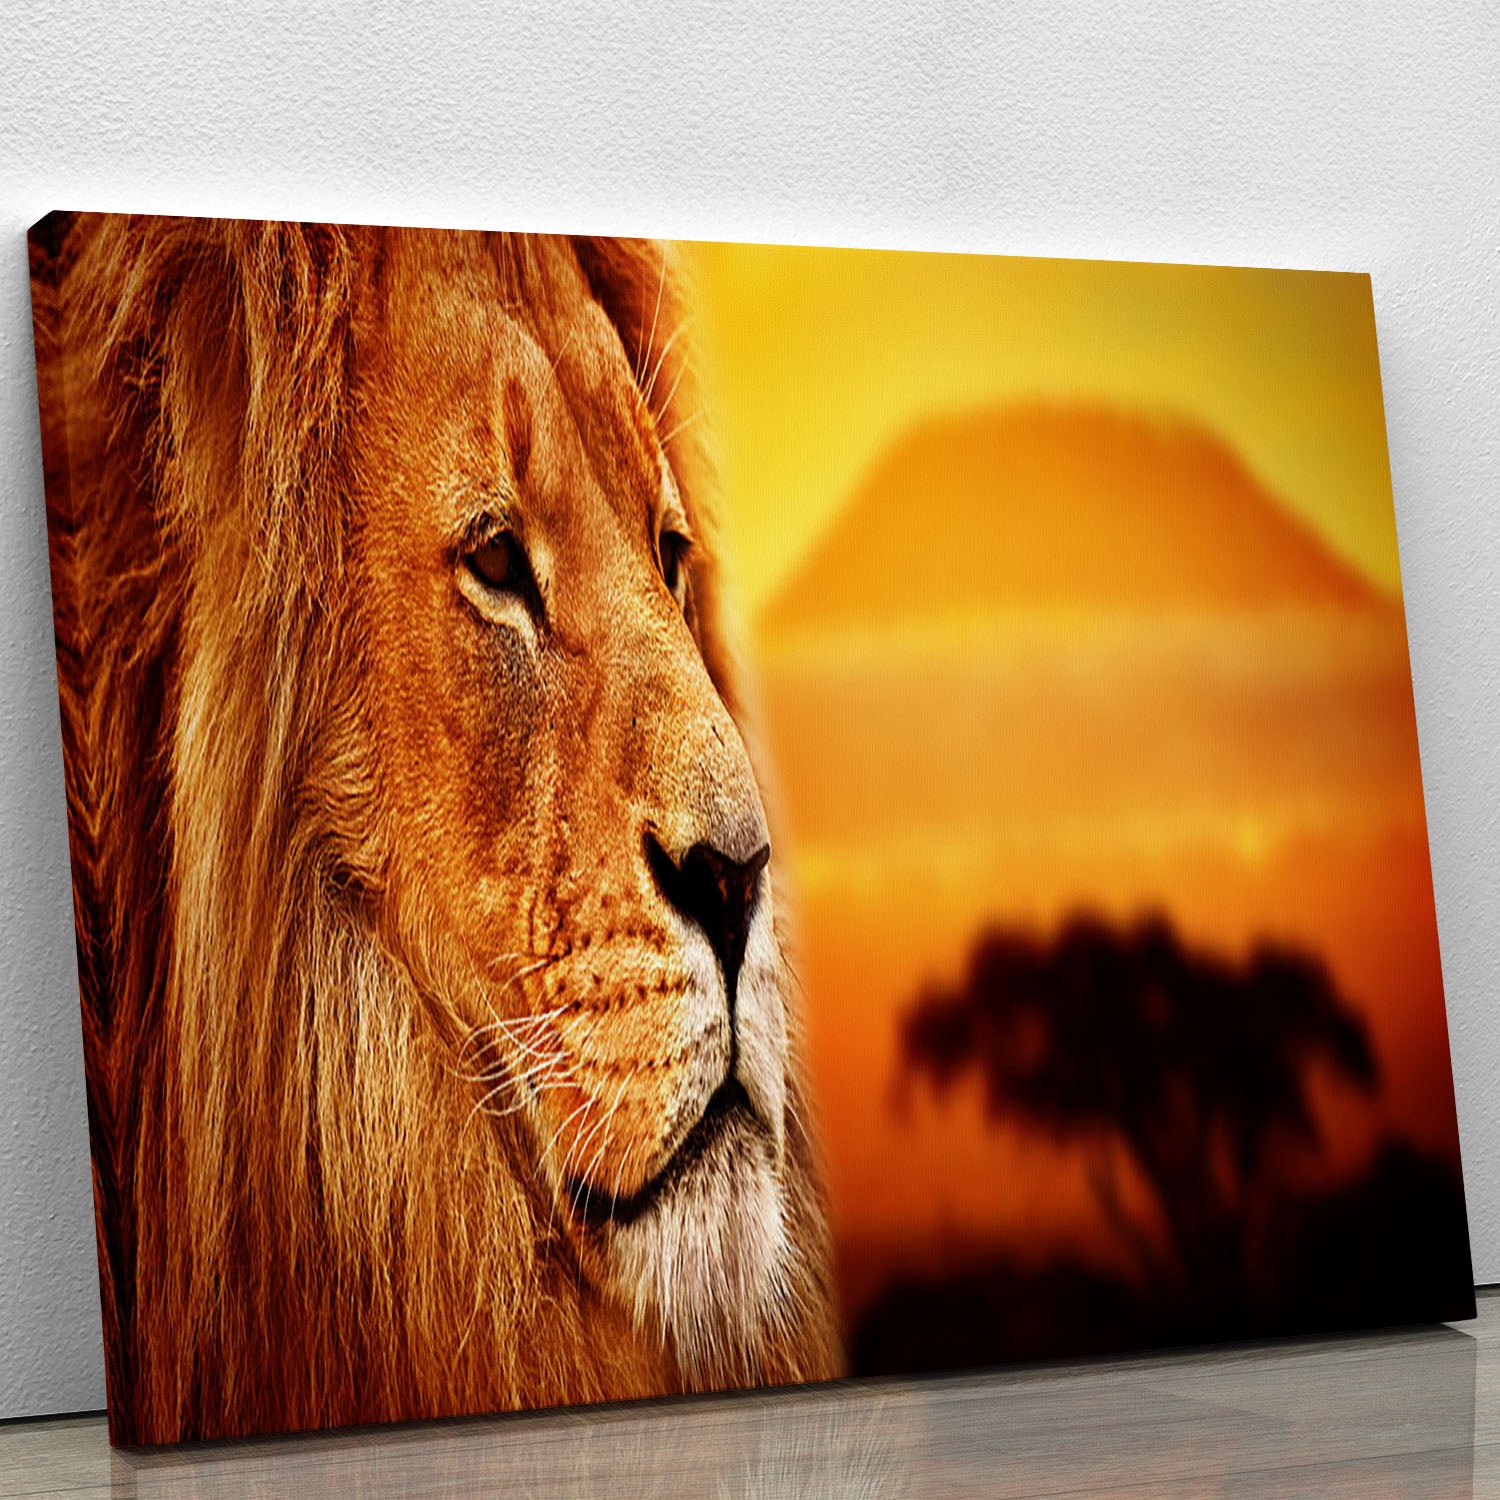 Lion portrait on savanna landscape Canvas Print or Poster - Canvas Art Rocks - 1